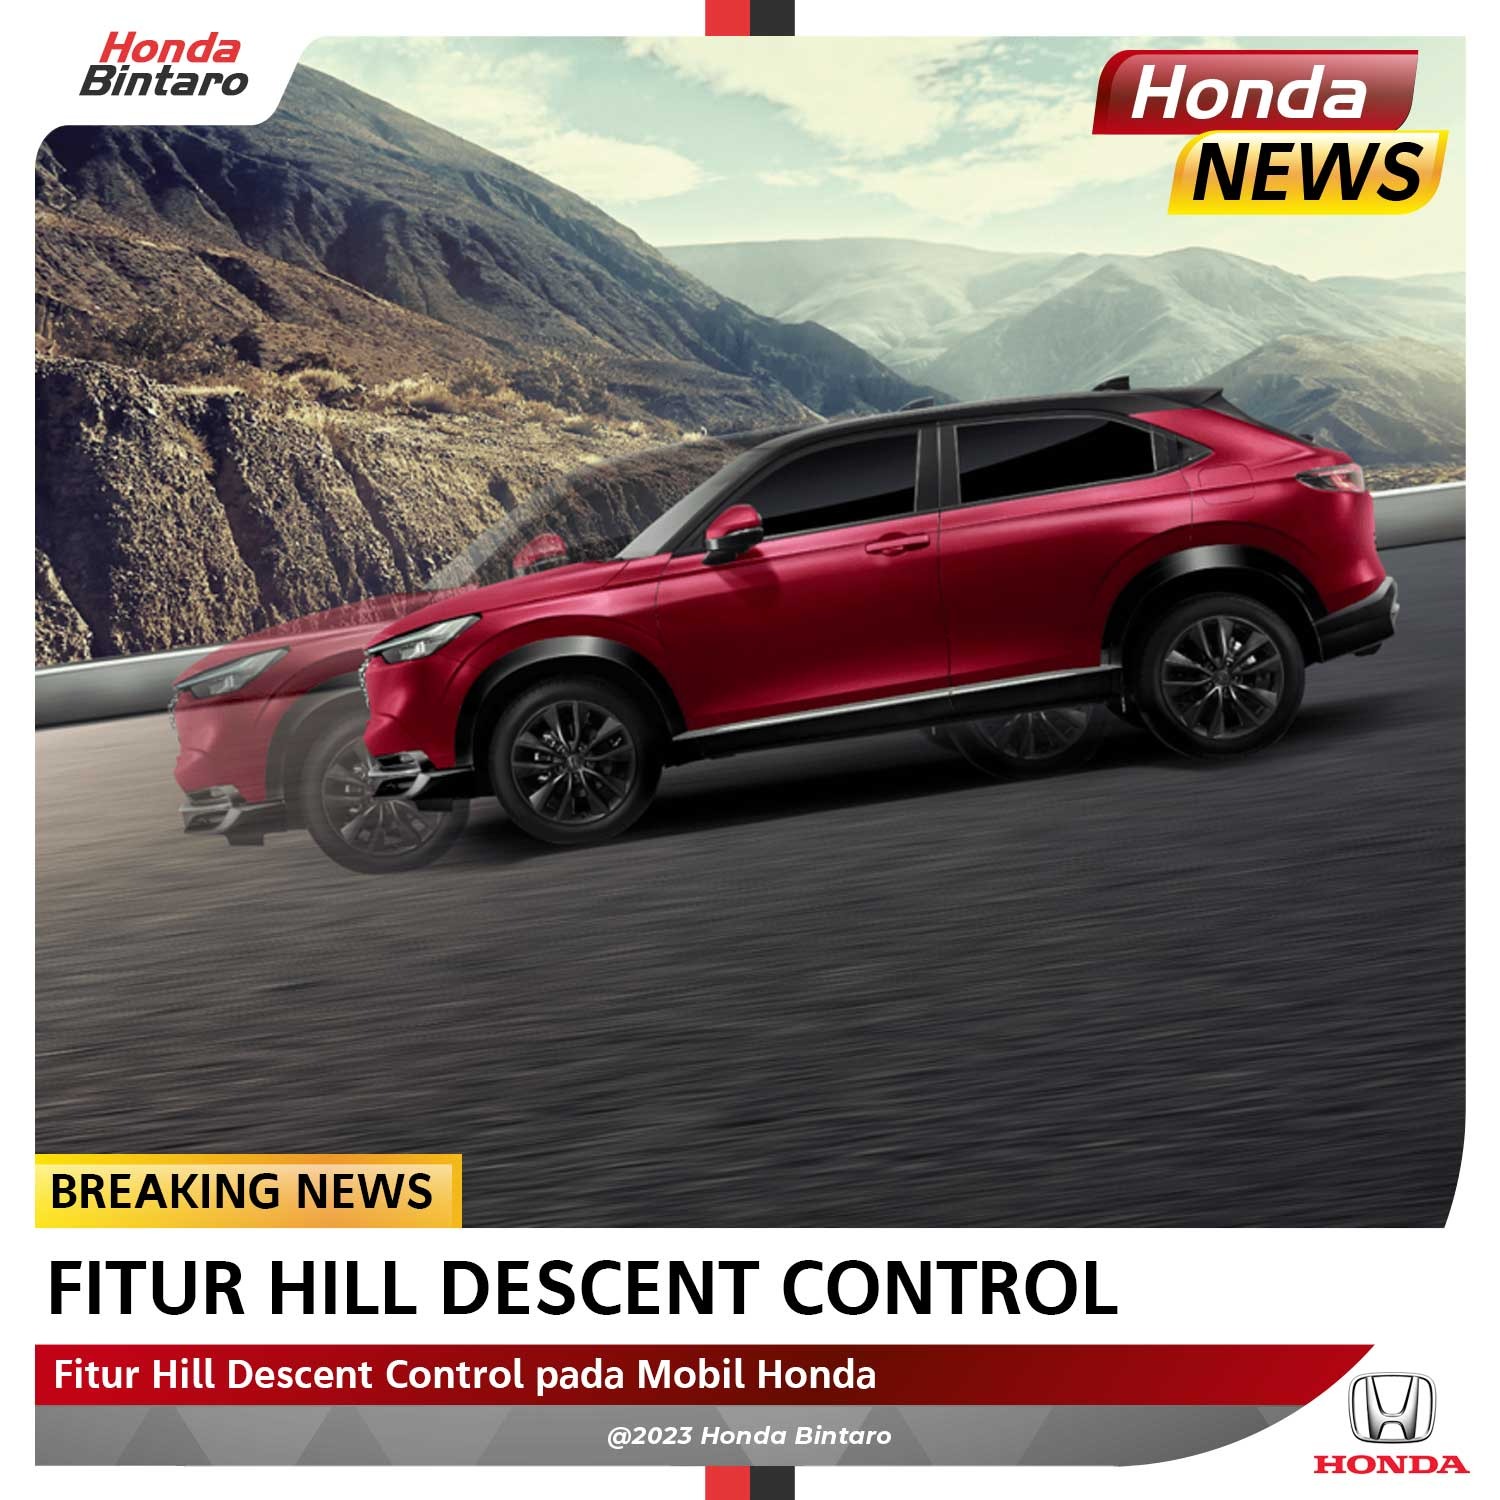 Fitur Hill Descent Control pada Mobil Honda